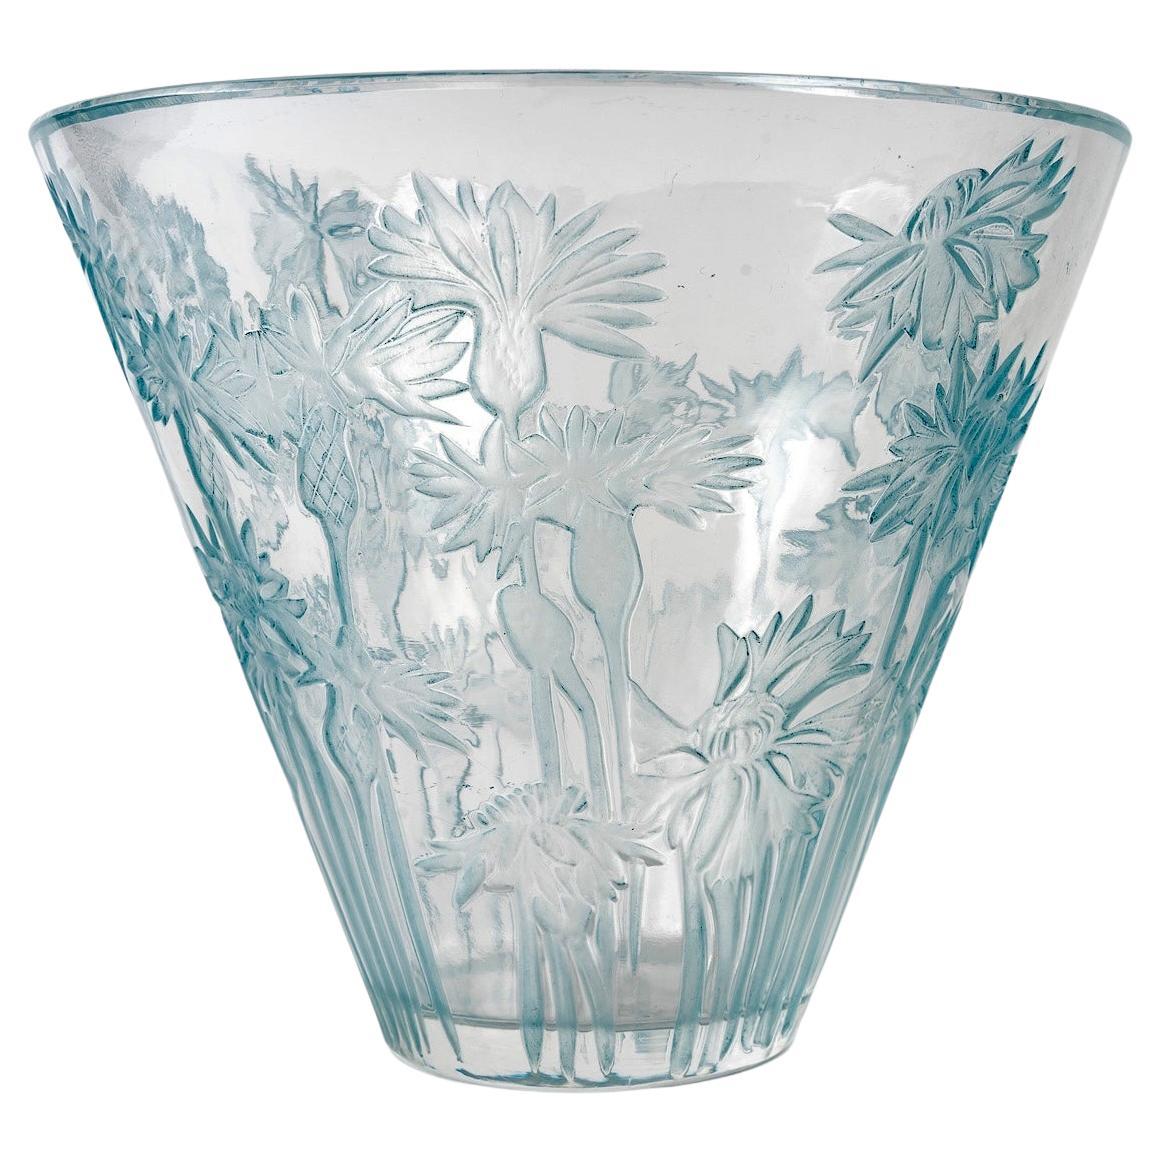 1914 René Lalique, Vase Bluets Clear Glass with Blue Patina